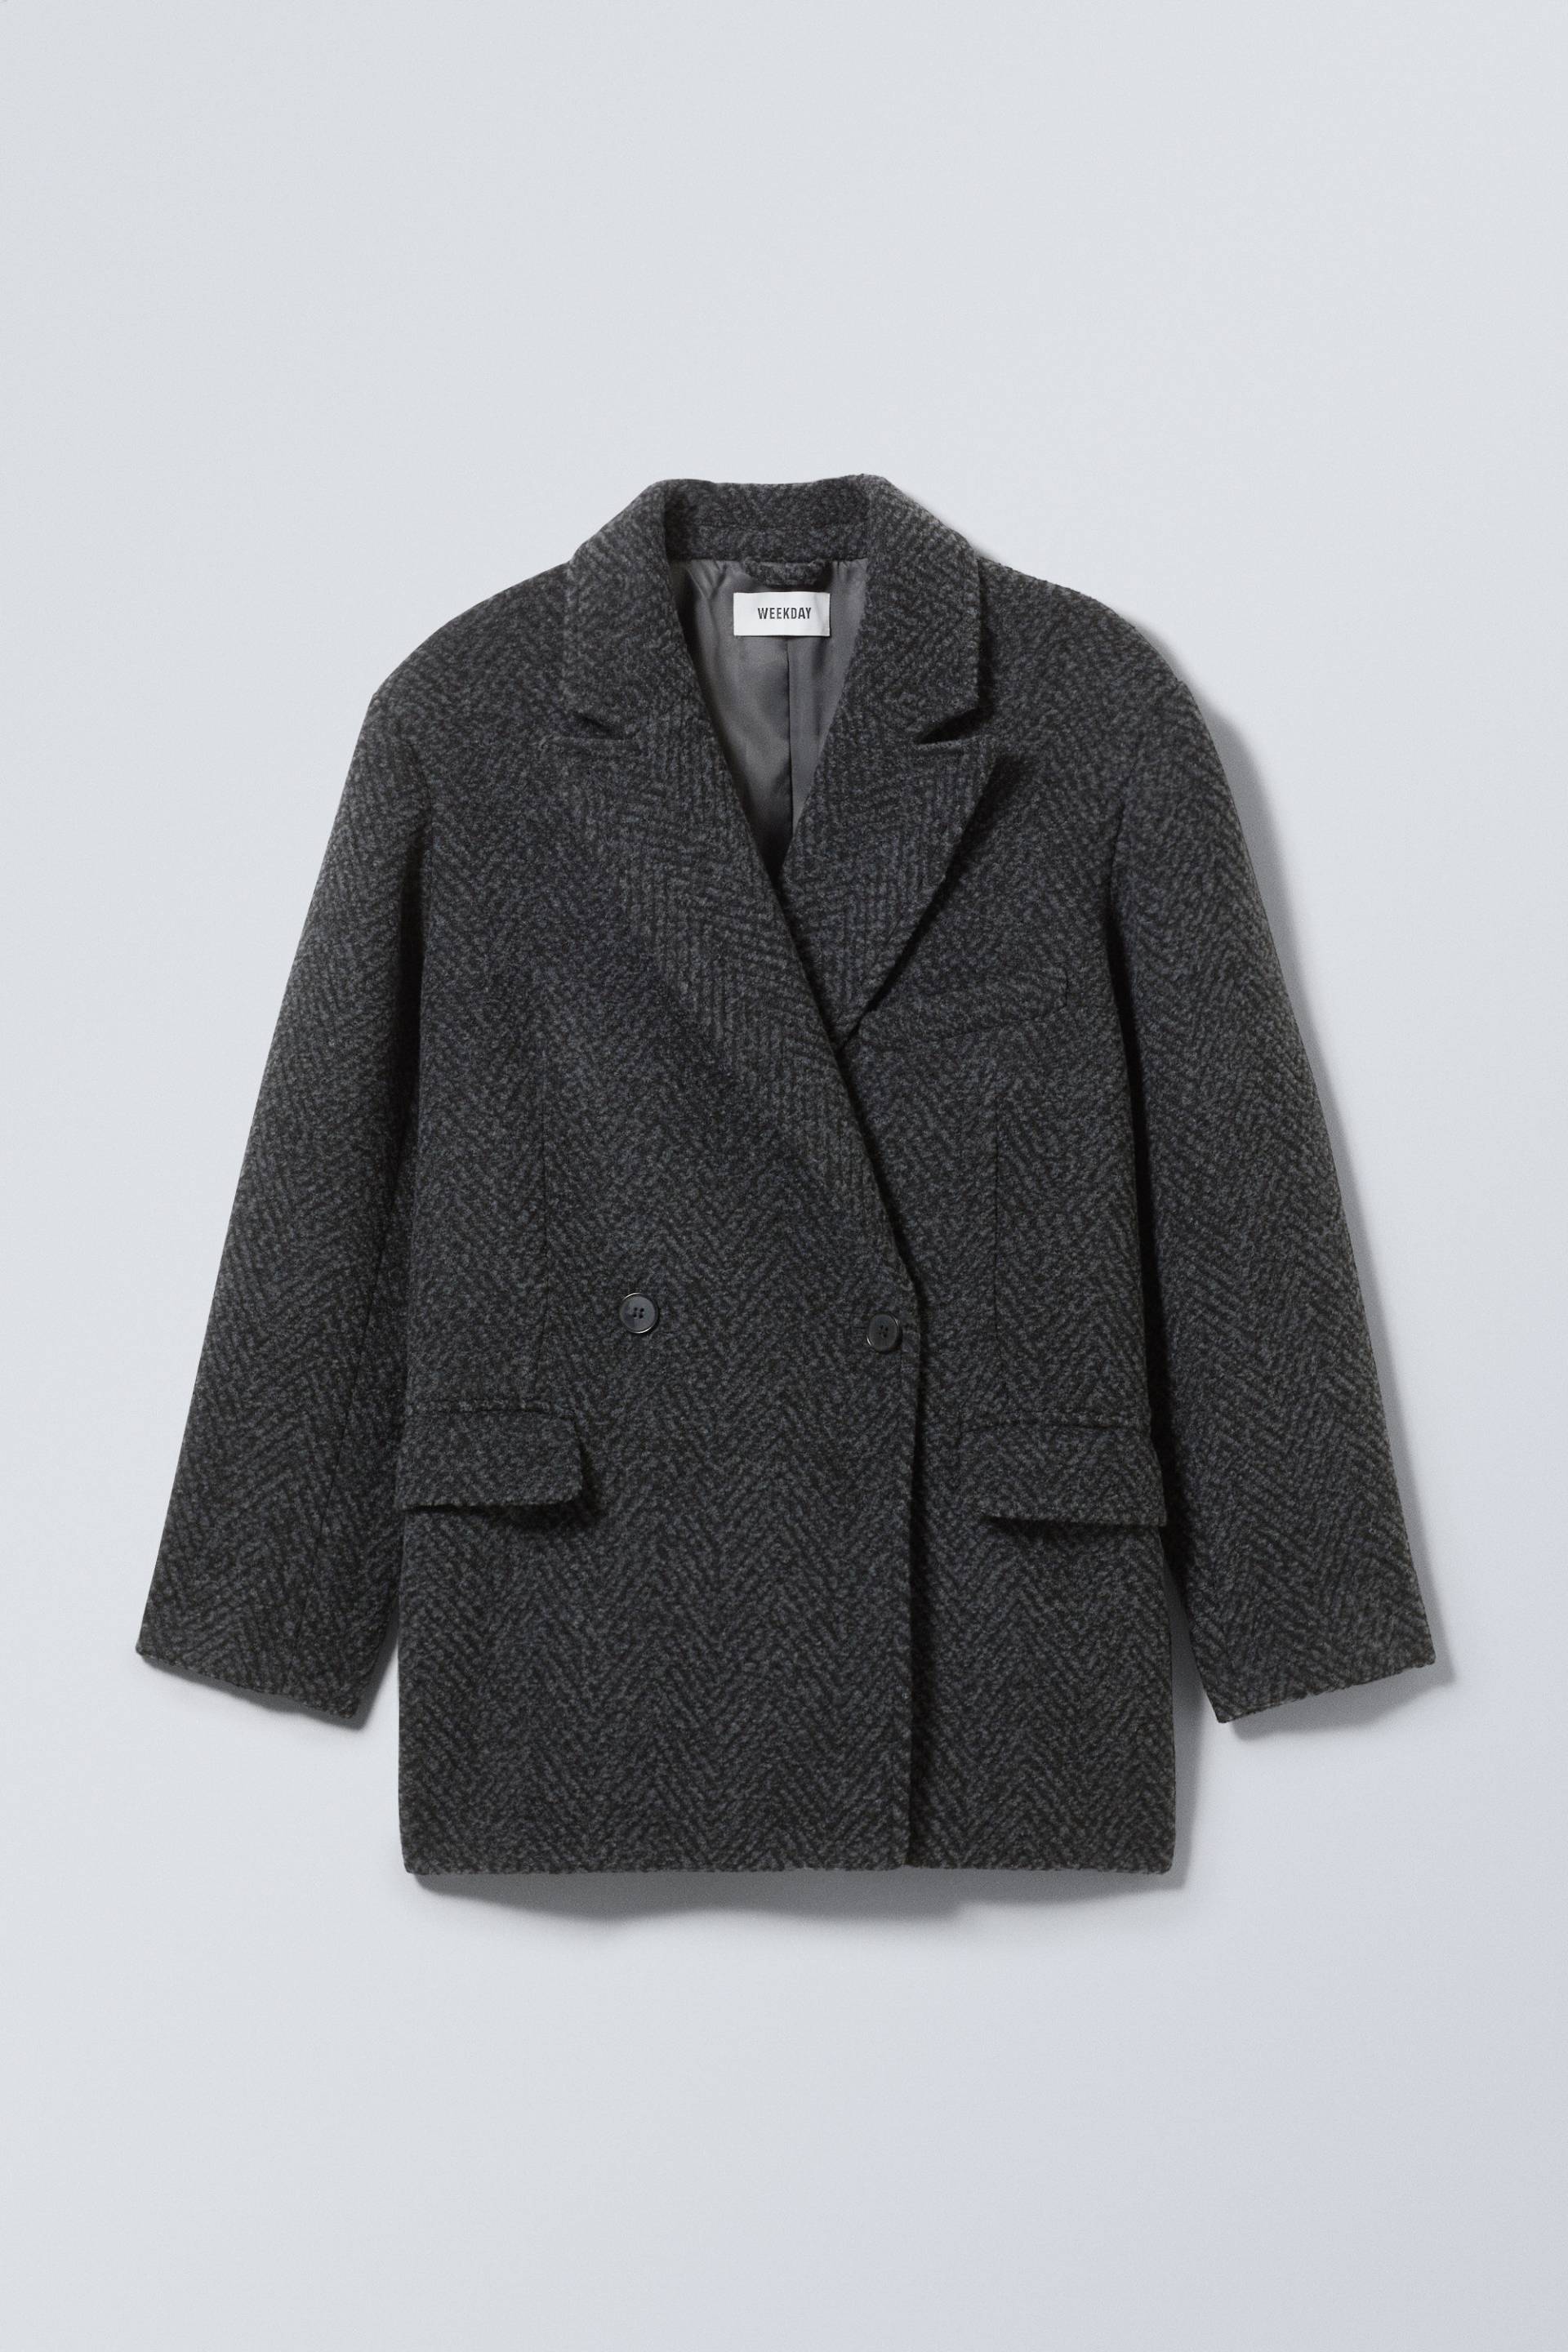 Weekday Jacke aus Wollmischung Carla Grau/Fischgrätmuster, Jacken in Größe 36. Farbe: Grey herringbone von Weekday